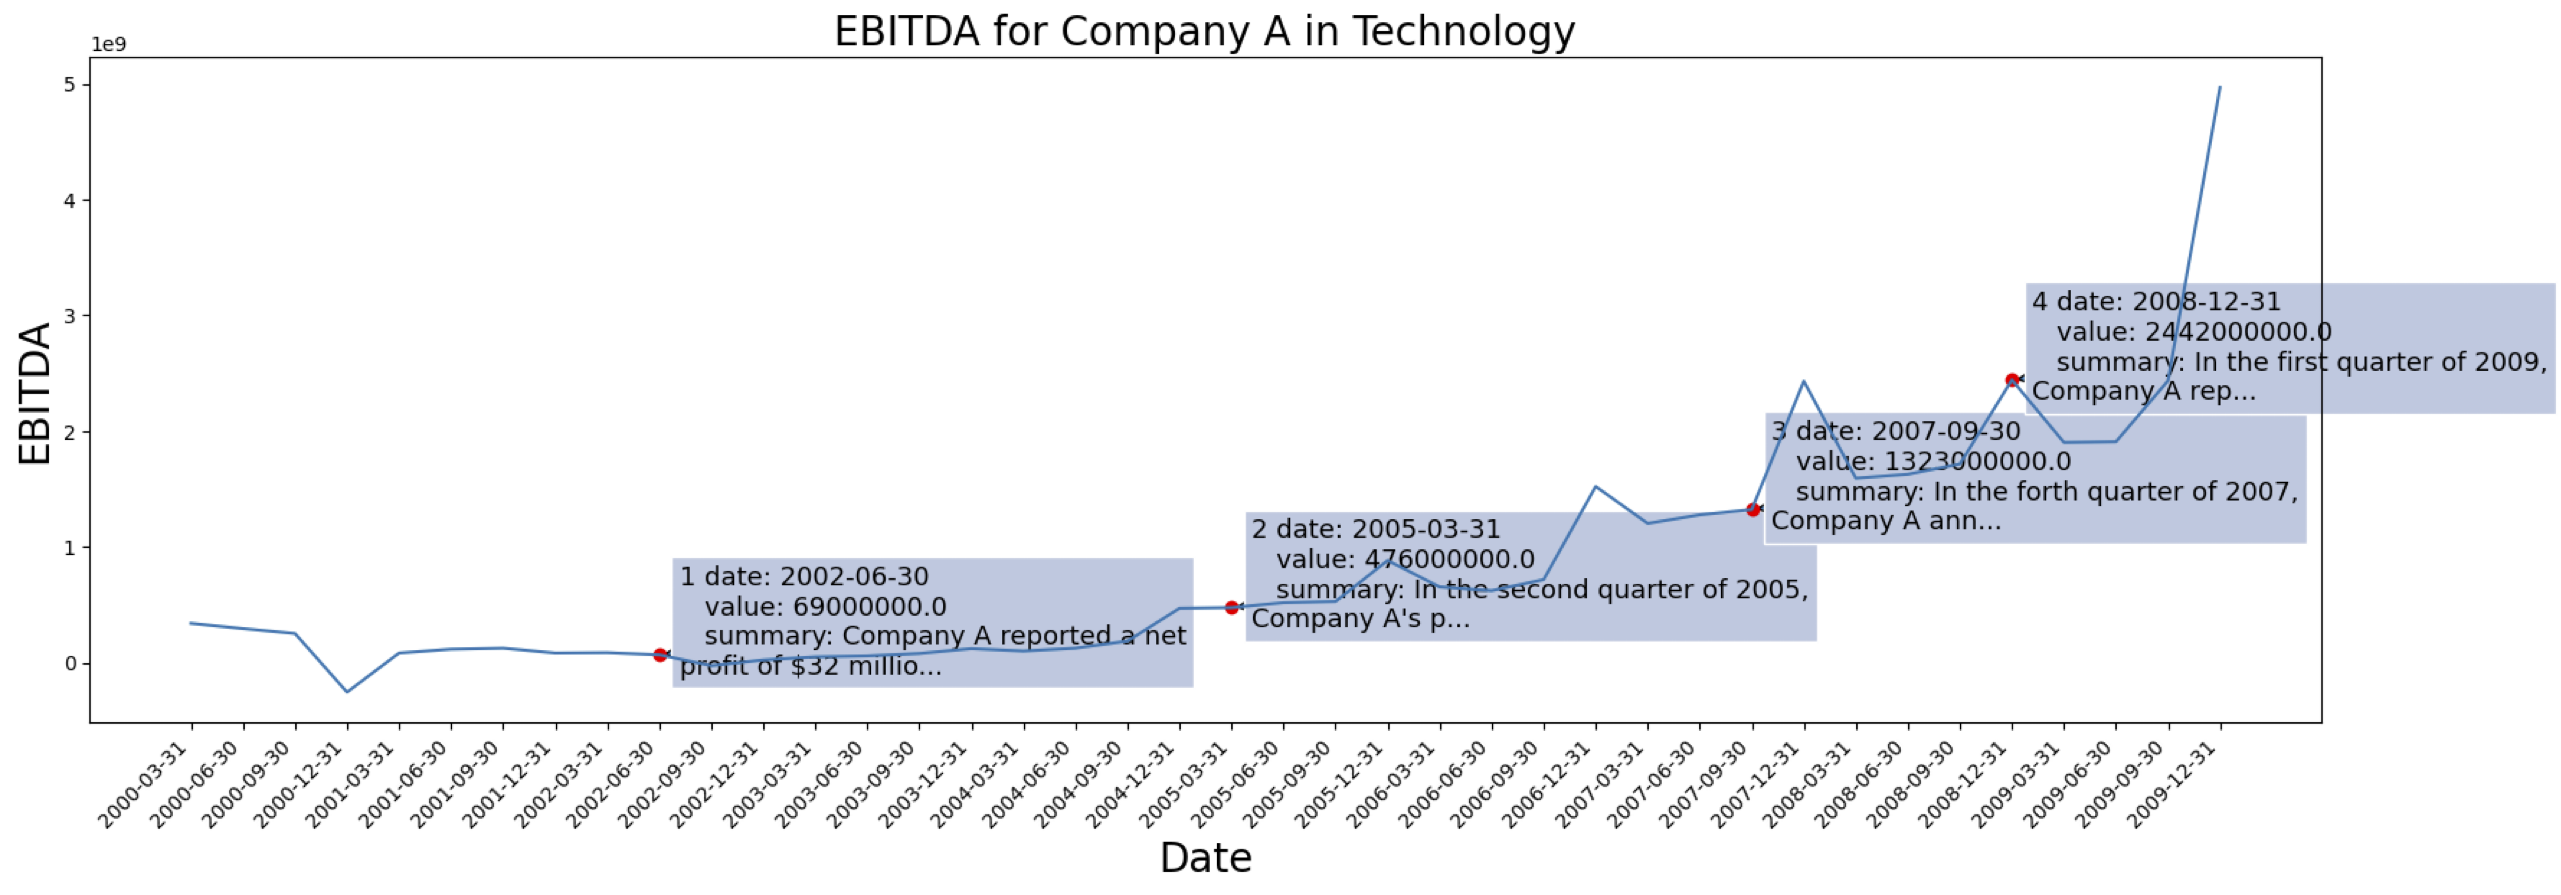 Company1_ebitda_summary